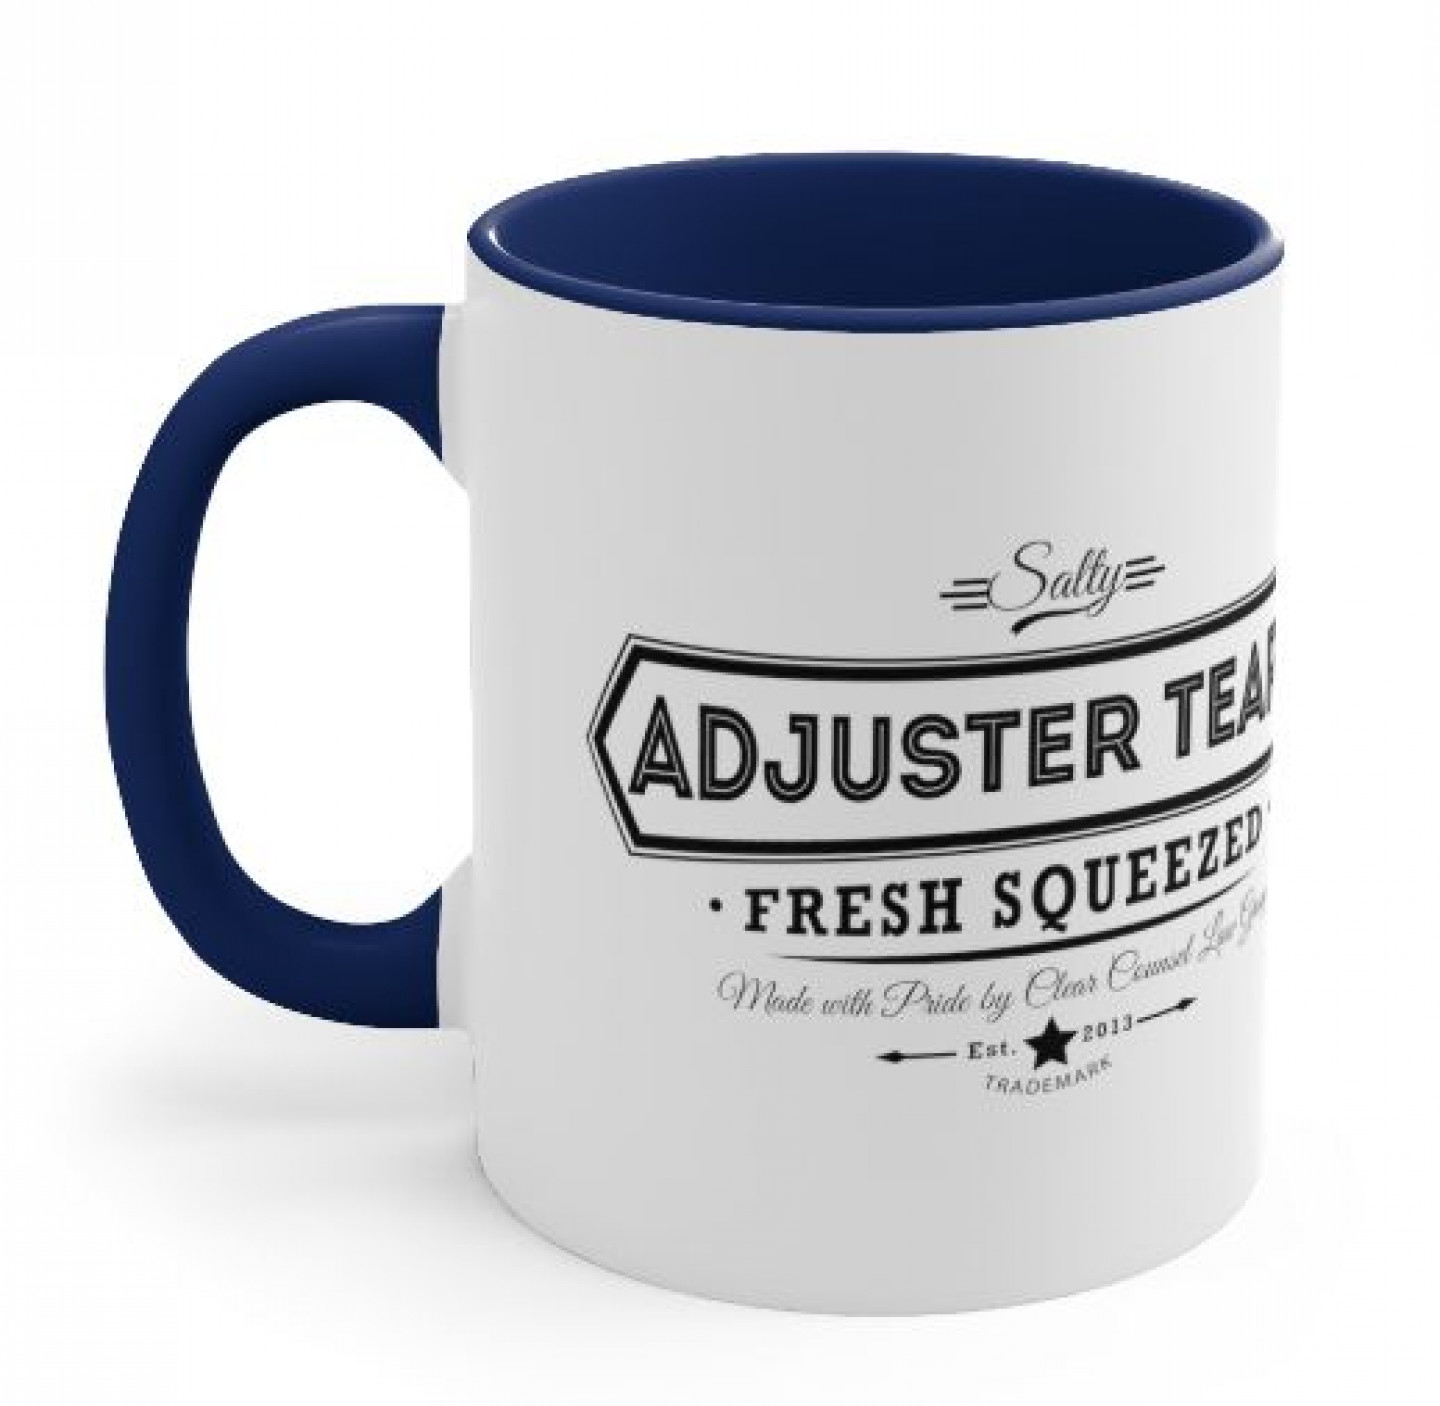 adjuster tears mug